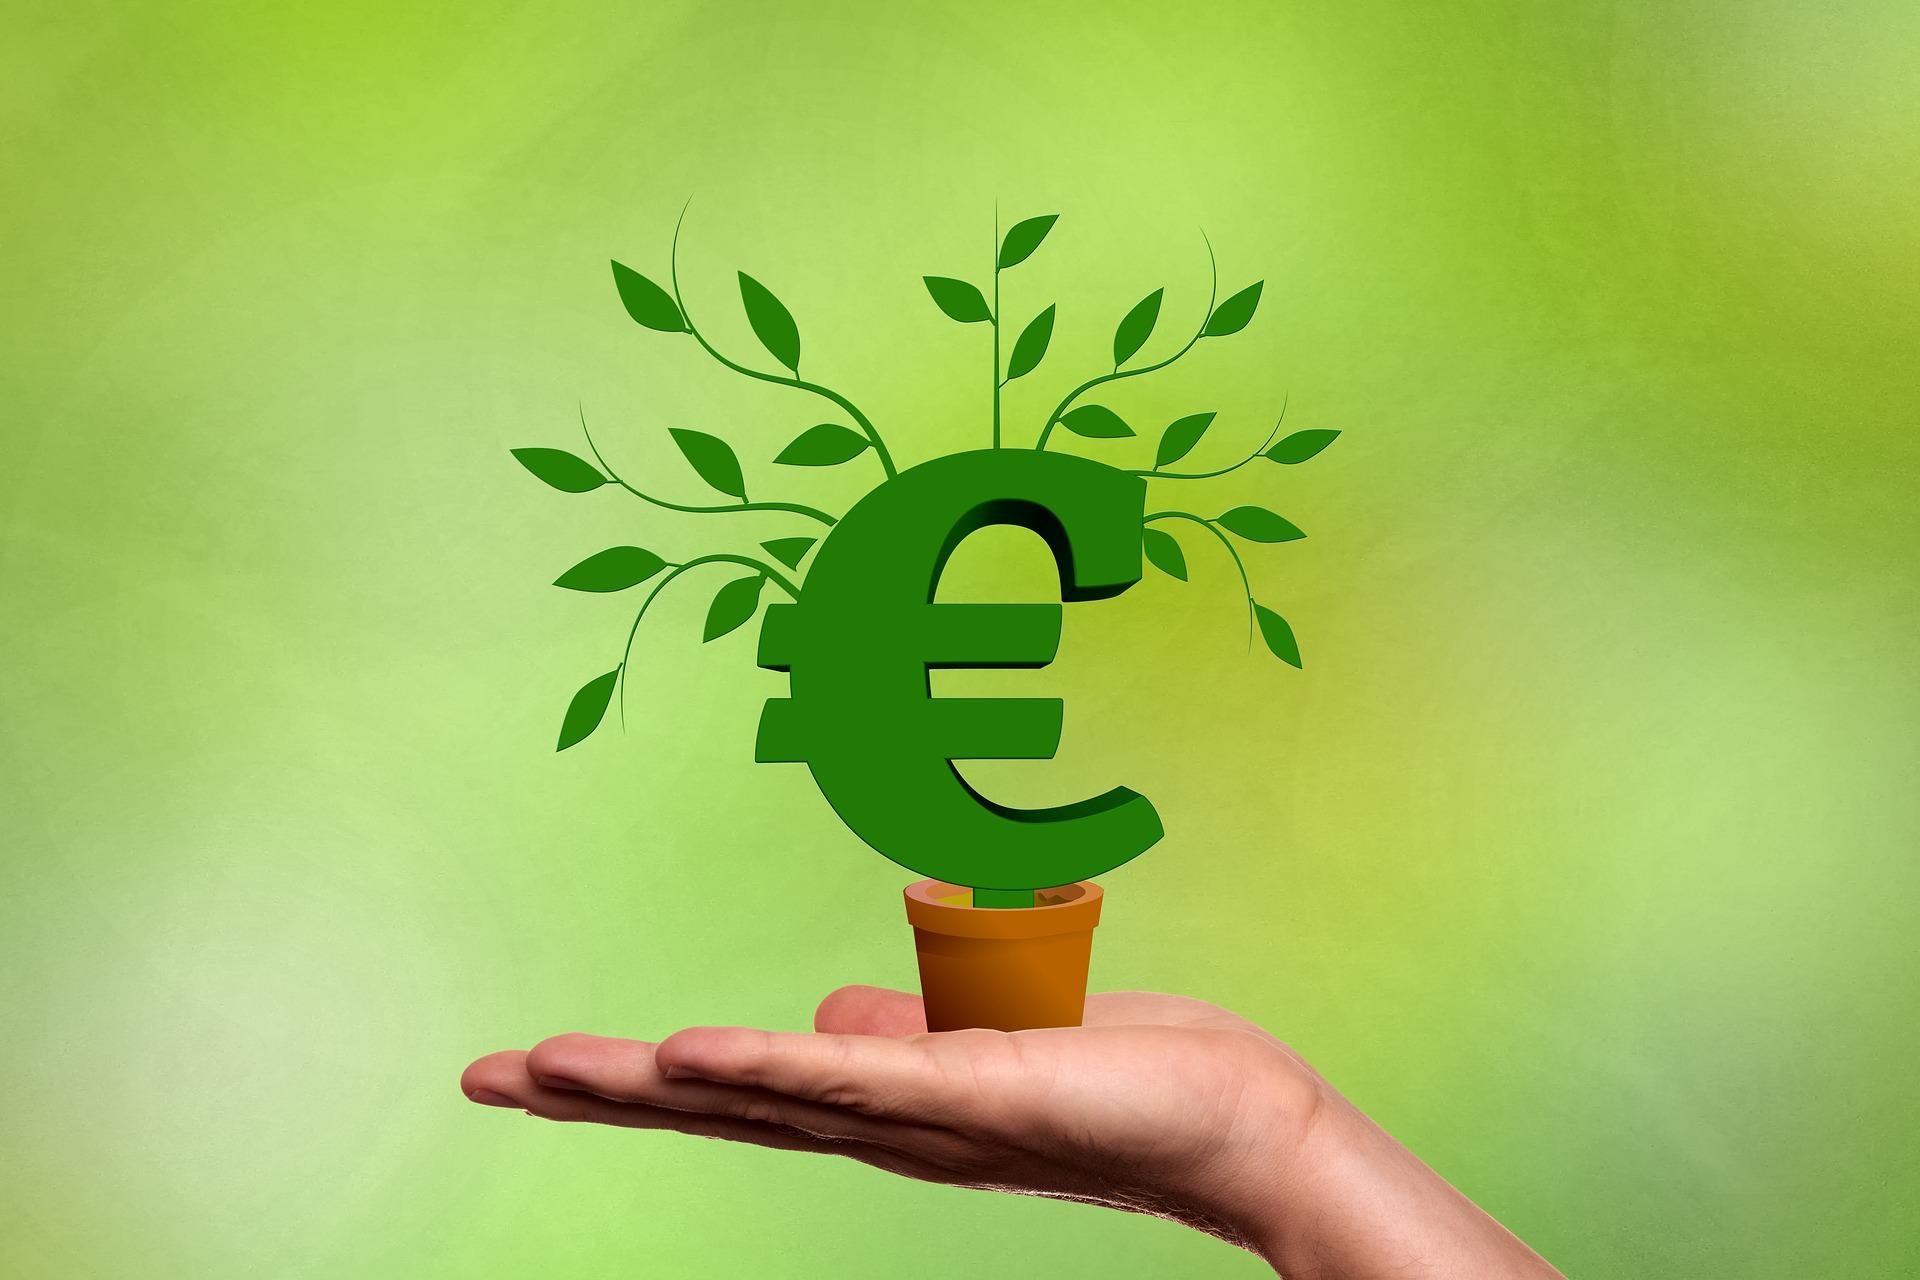 Hand hält wachsende Pflanze in der Hand, die ein Eurozeichen darstellt